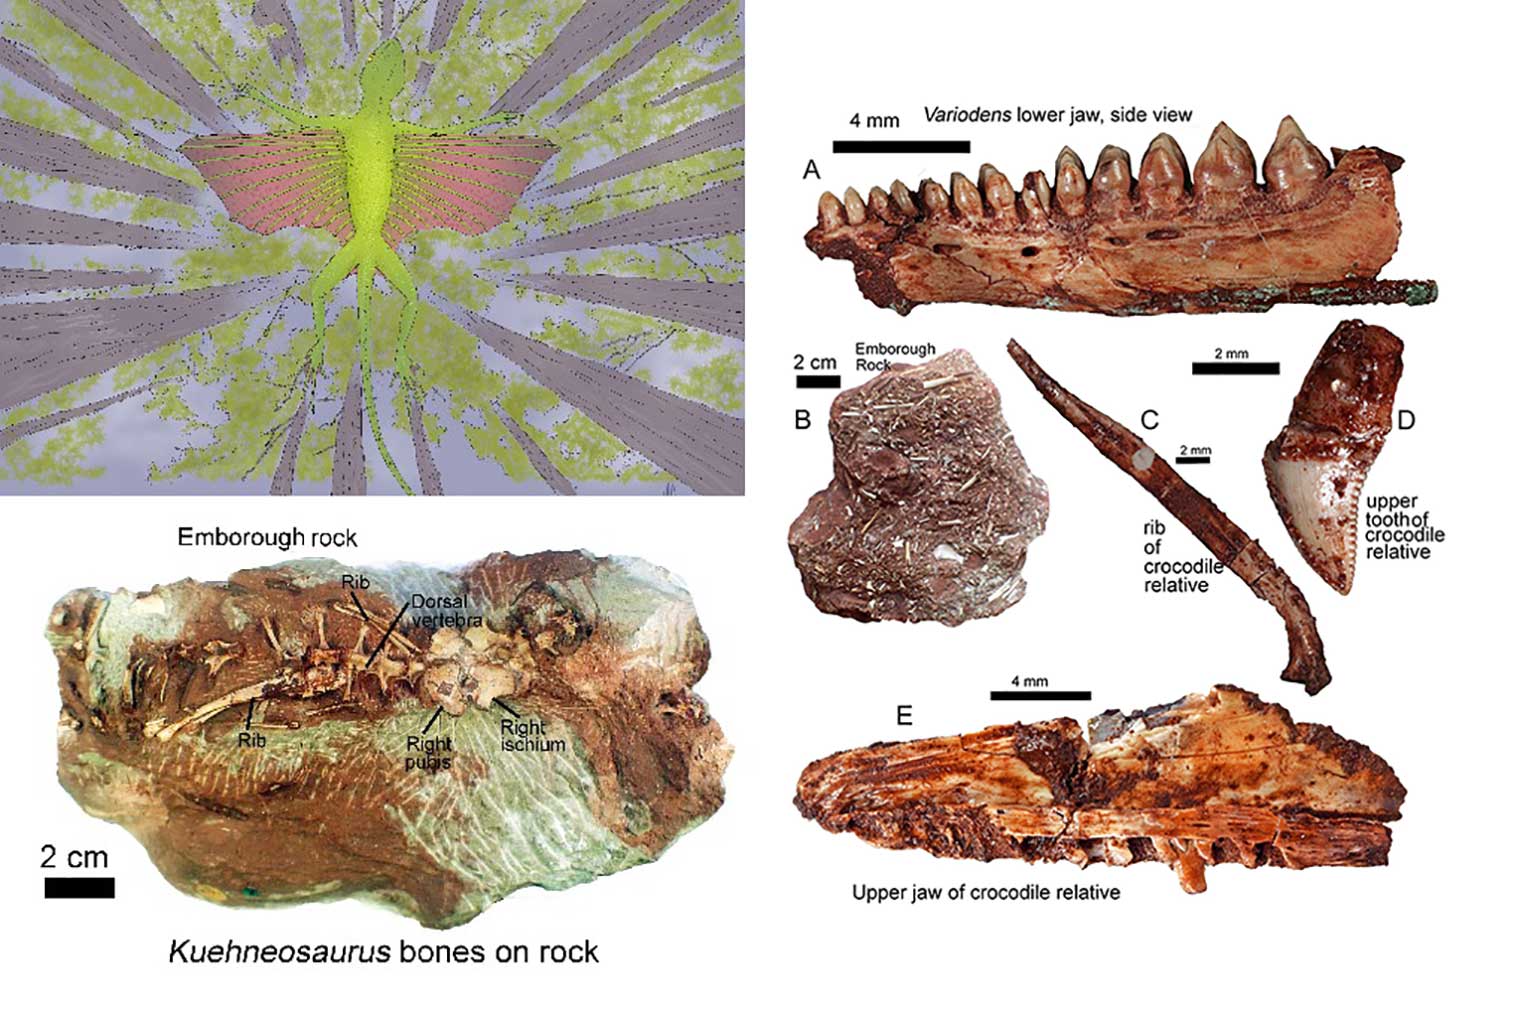 Des reptiles volants vieux de 200 millions d'années découverts dans le Somerset